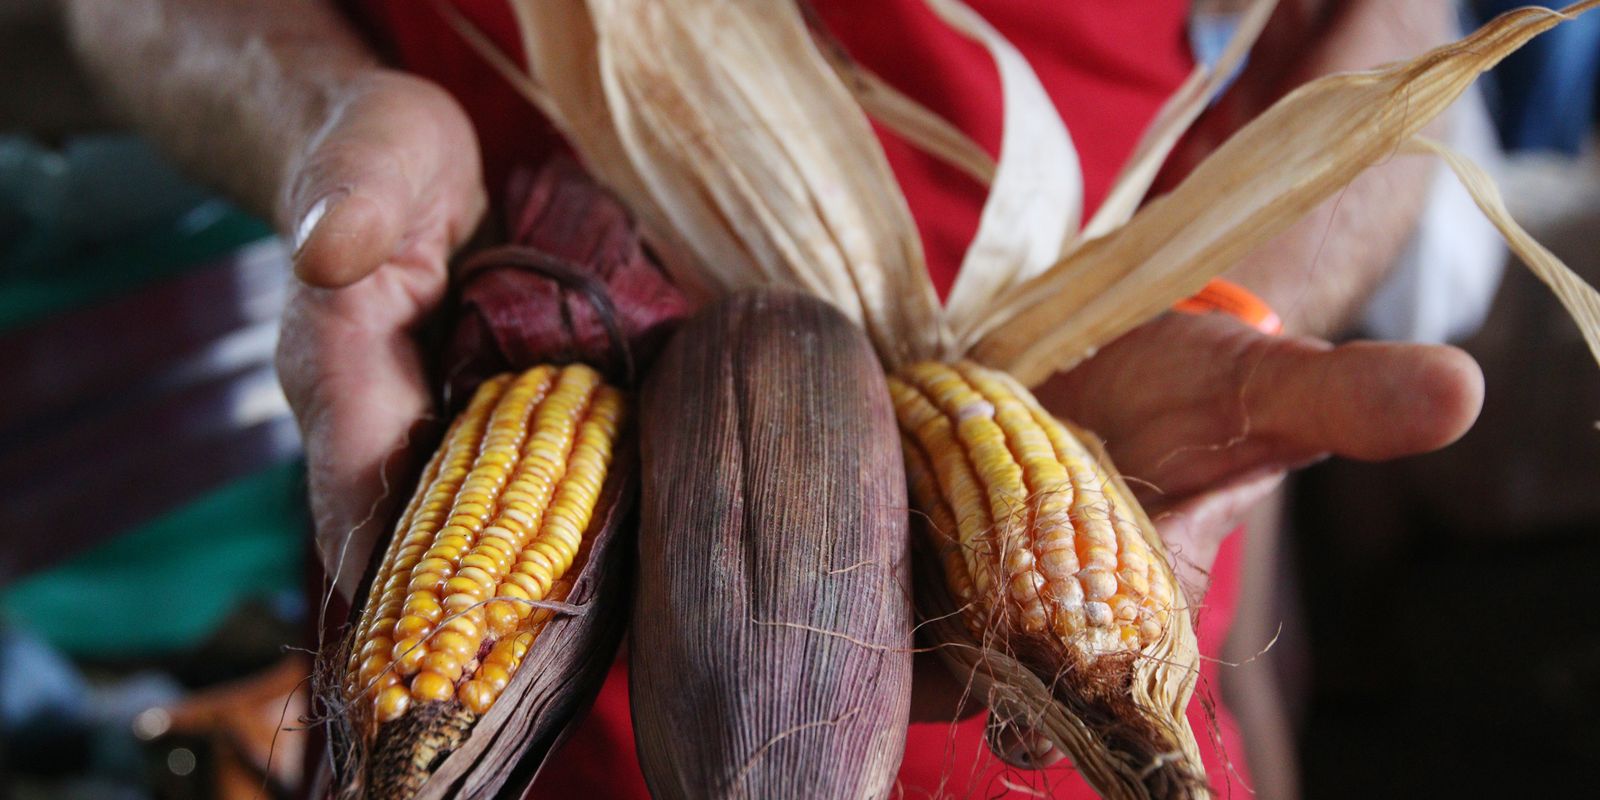 Produção sustentável de alimentos depende da reforma agrária, diz MST